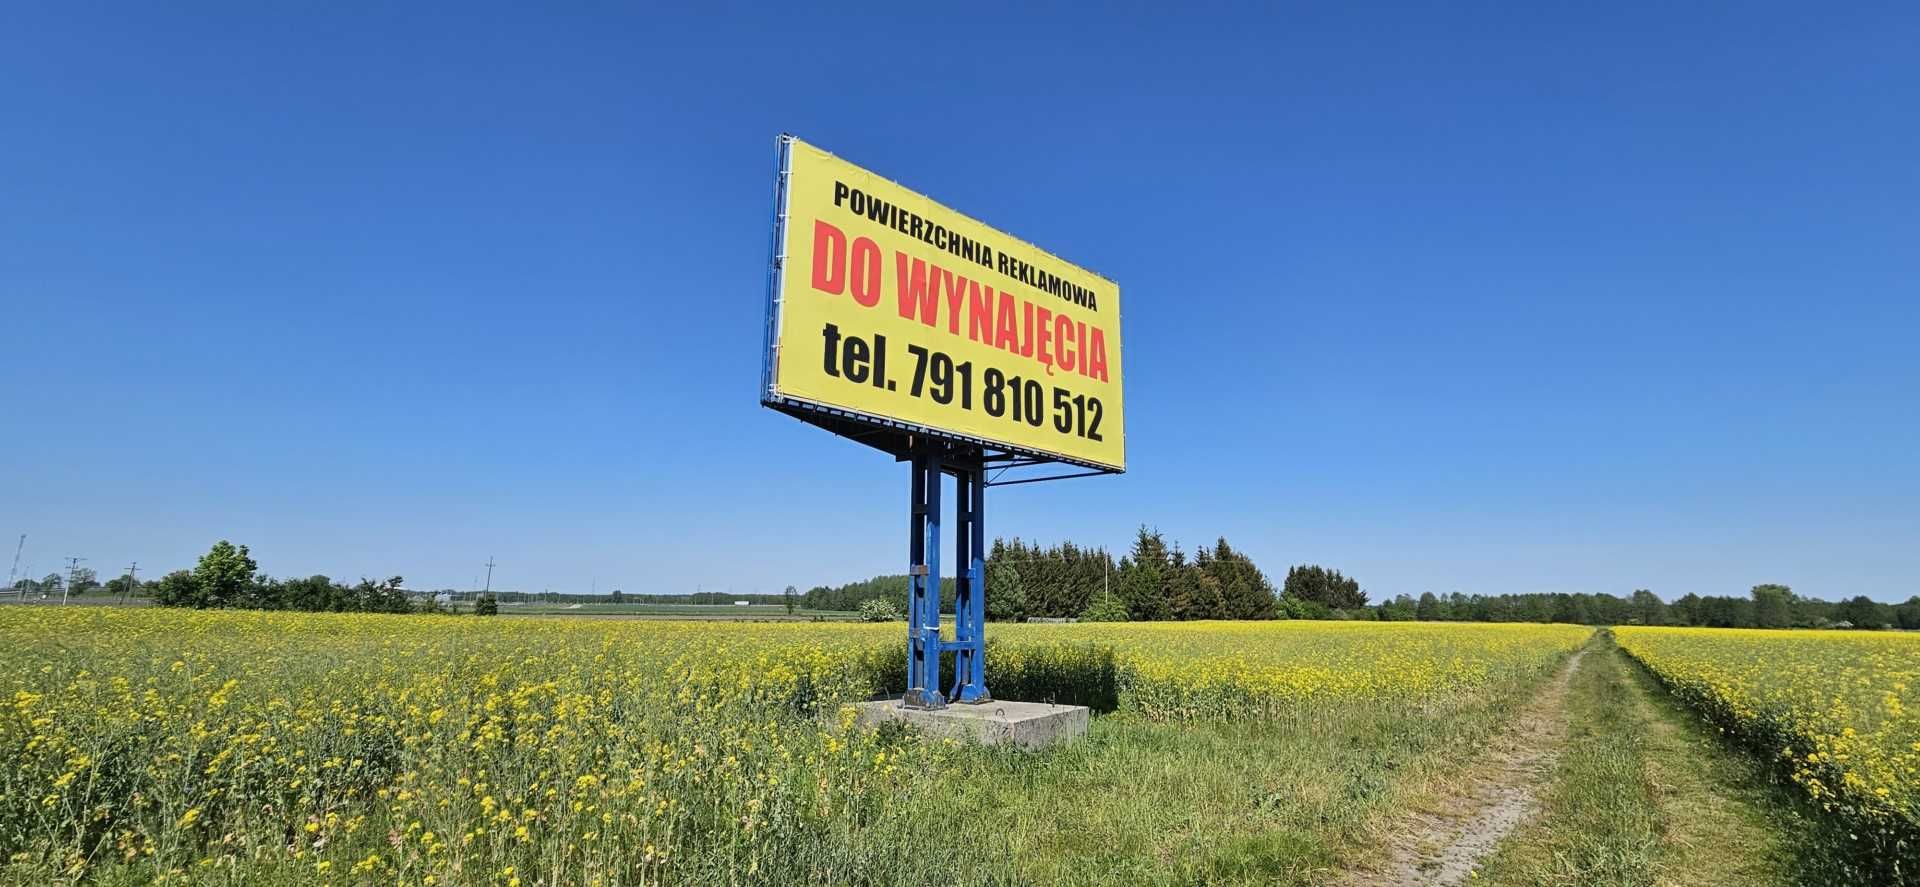 NA WYBORY- billboard reklamowy NOWA WIEŚ EŁCKA przy Białystok-Ełk